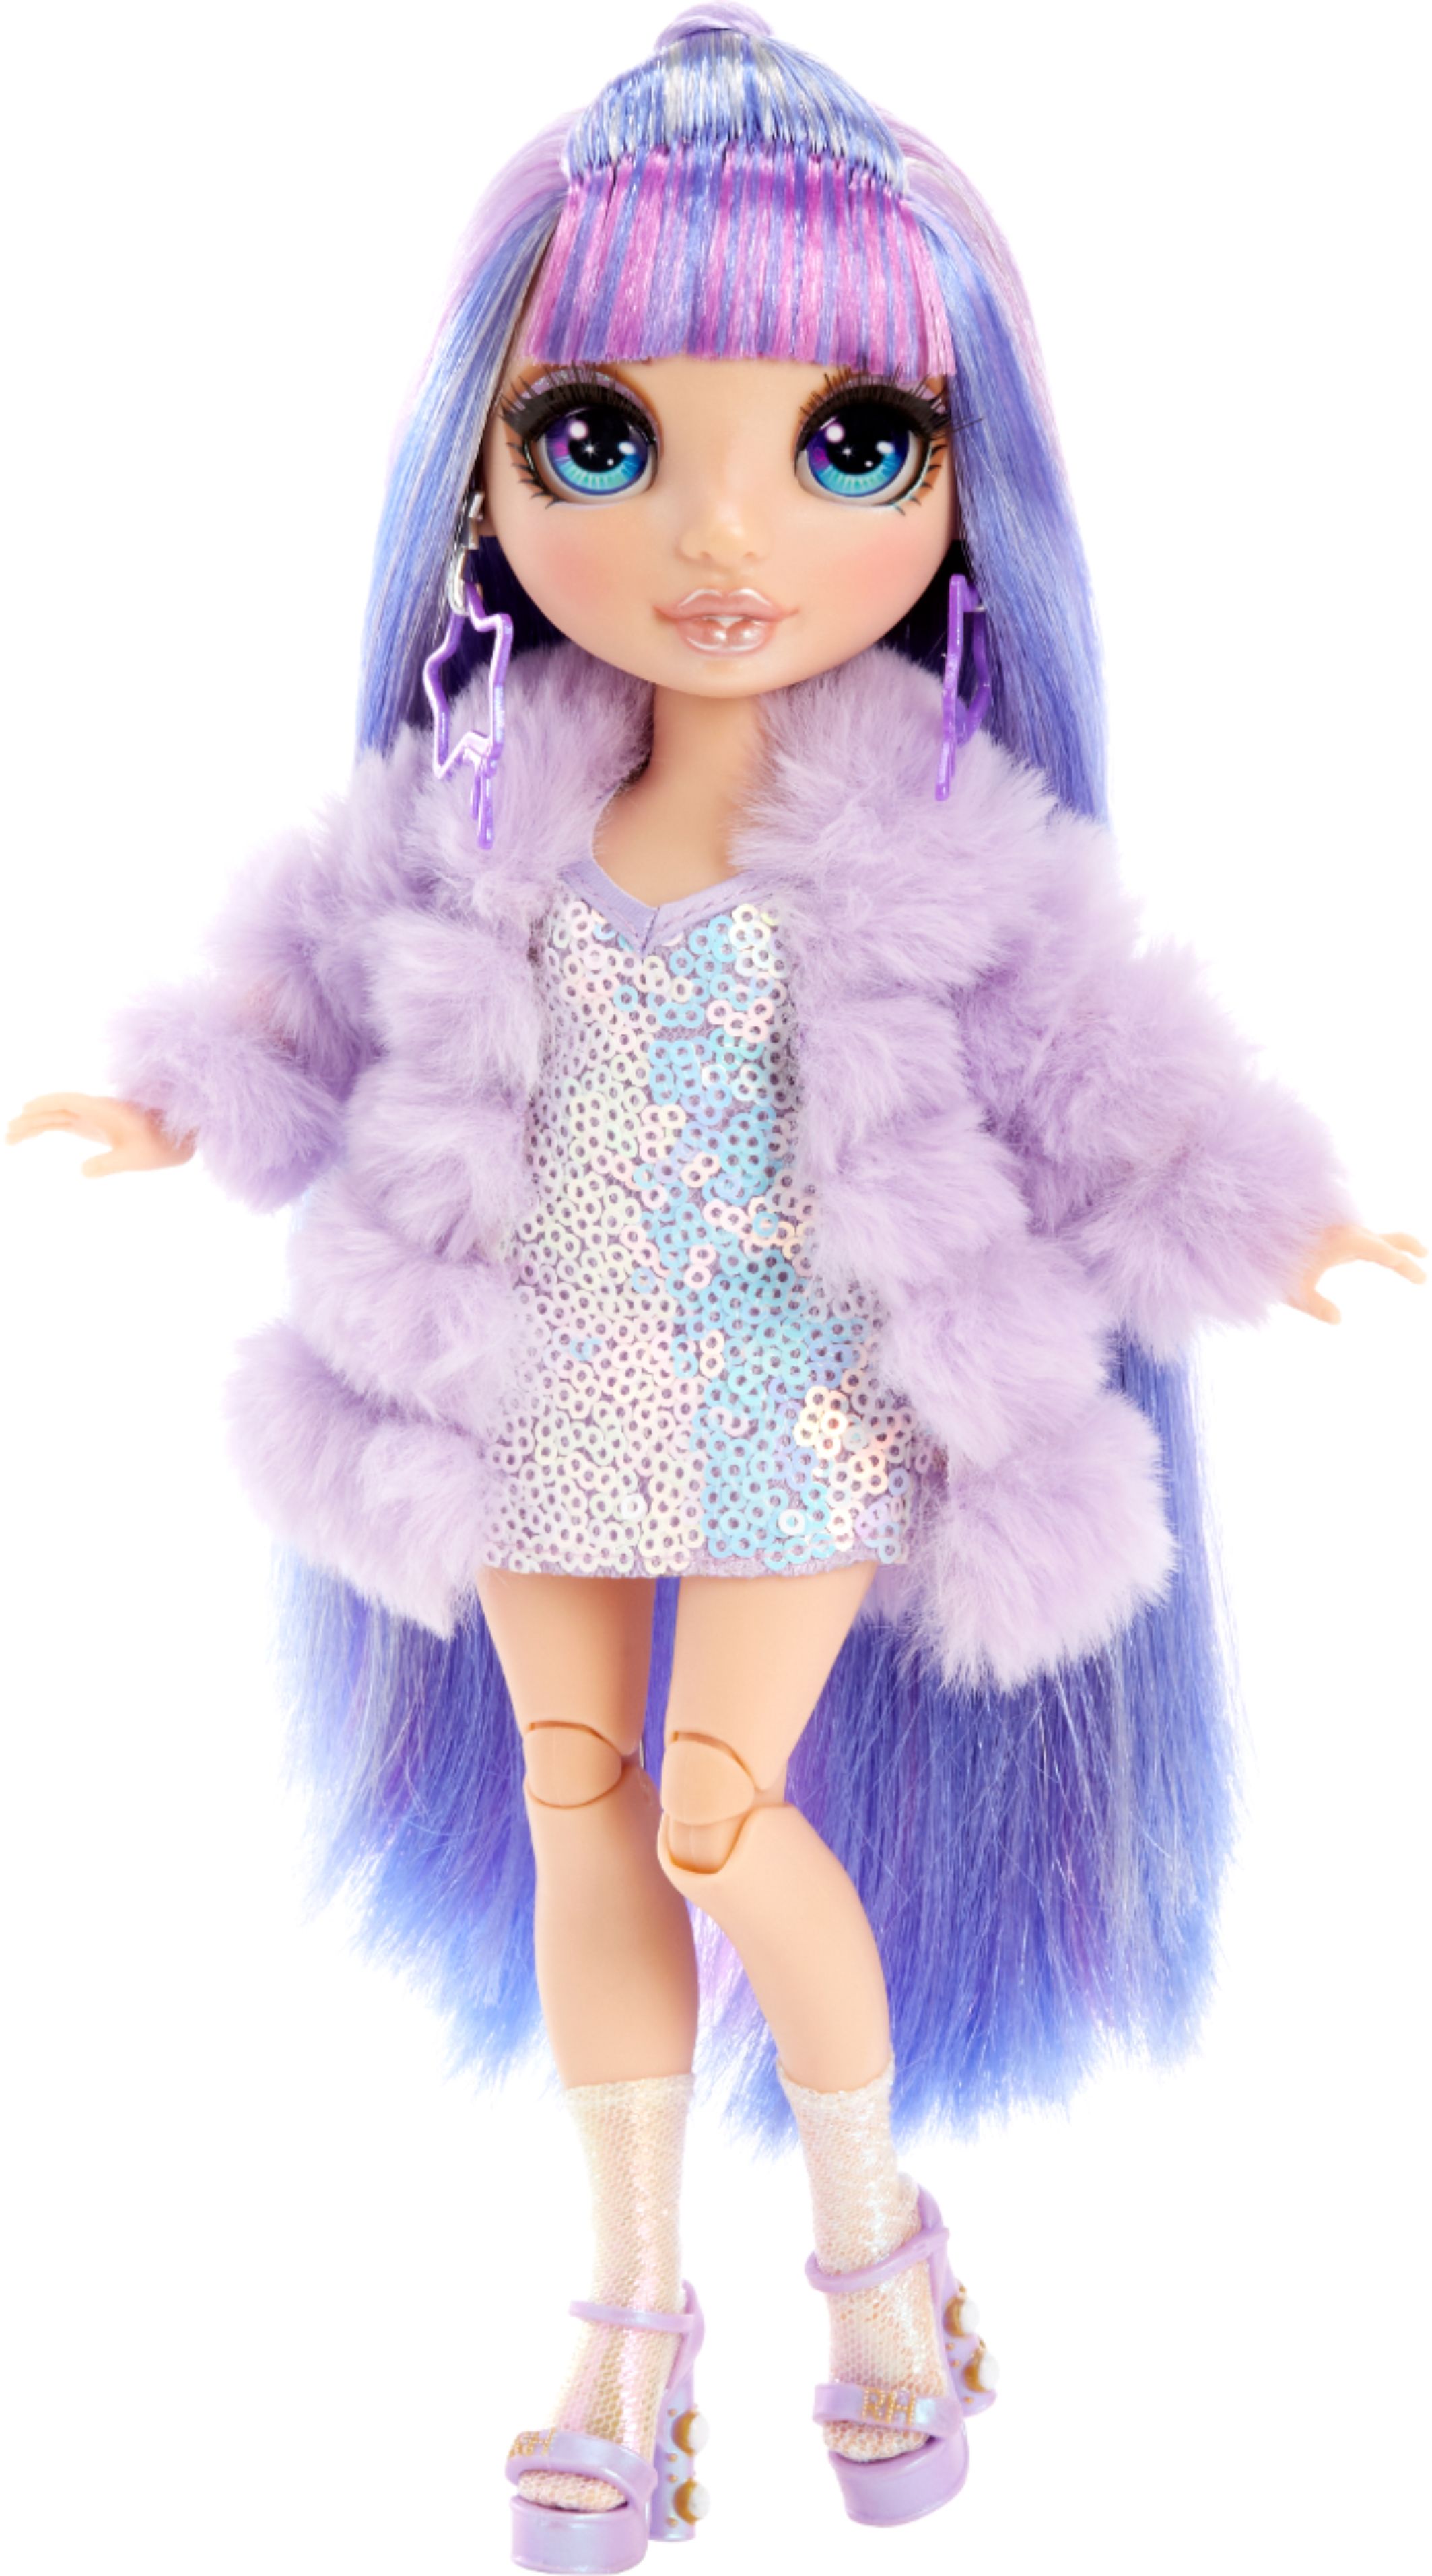 Violet doll